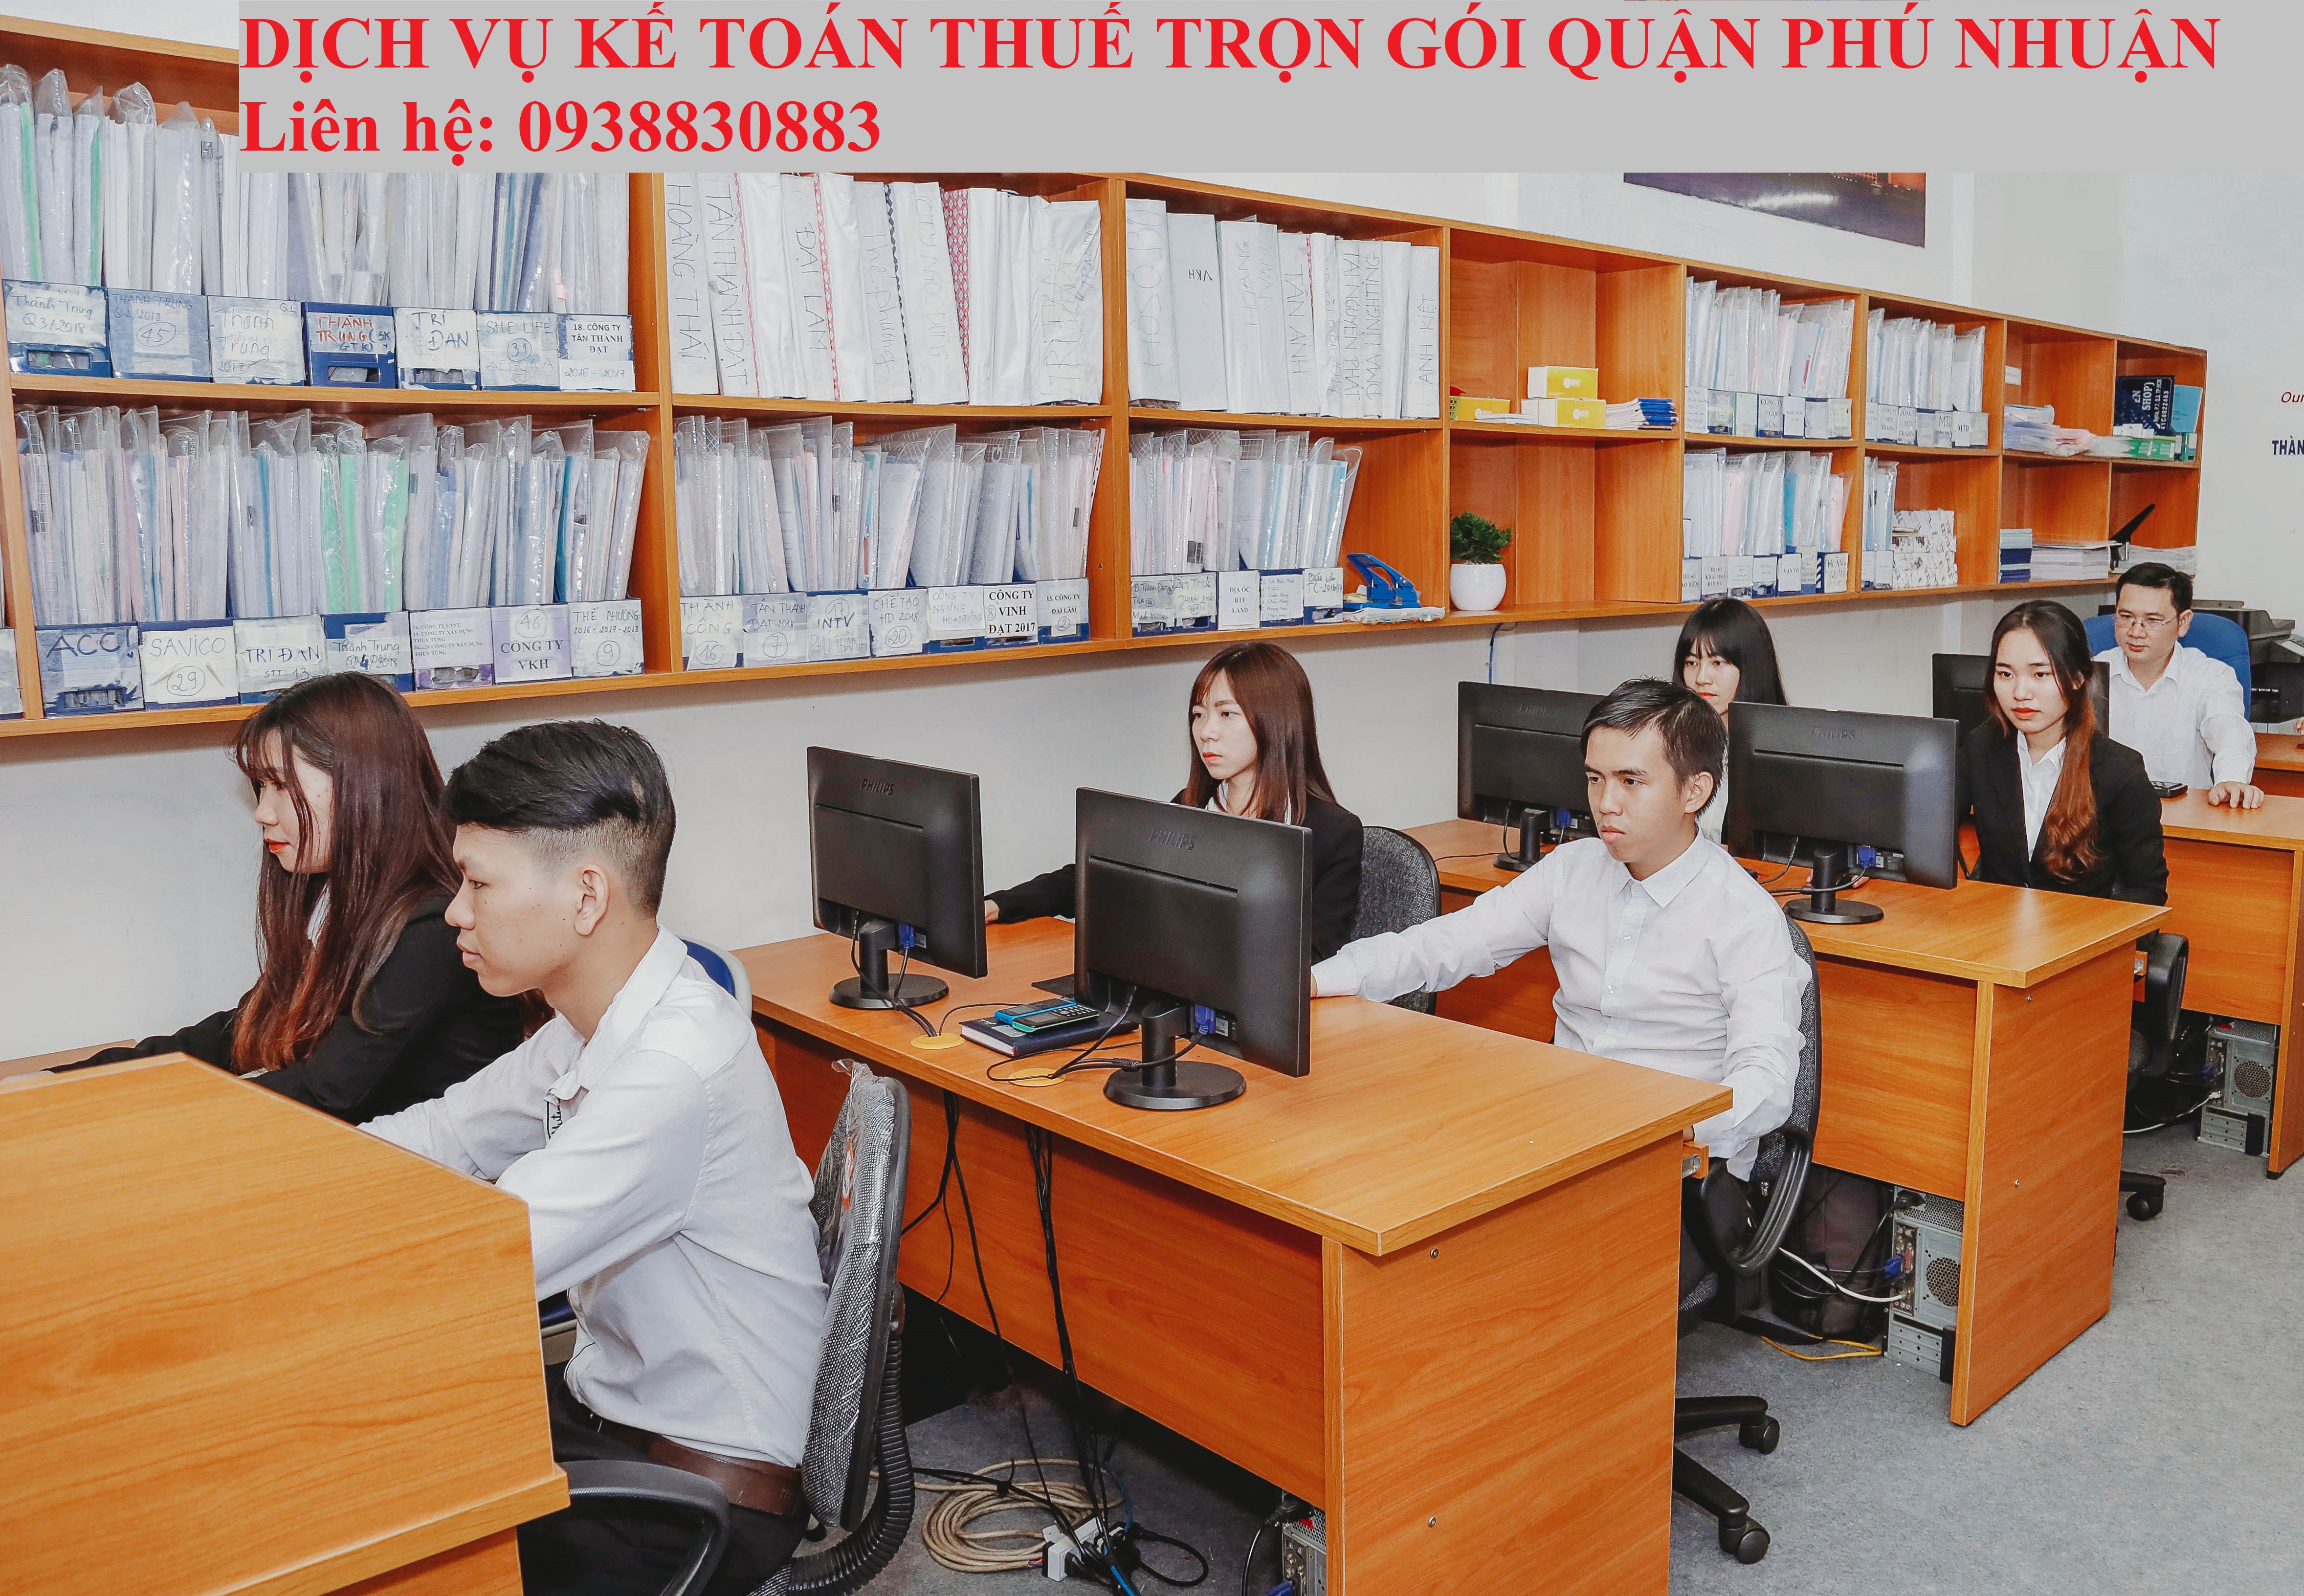 Dịch Vụ Kế Toán Thuế Quận Phú Nhuận